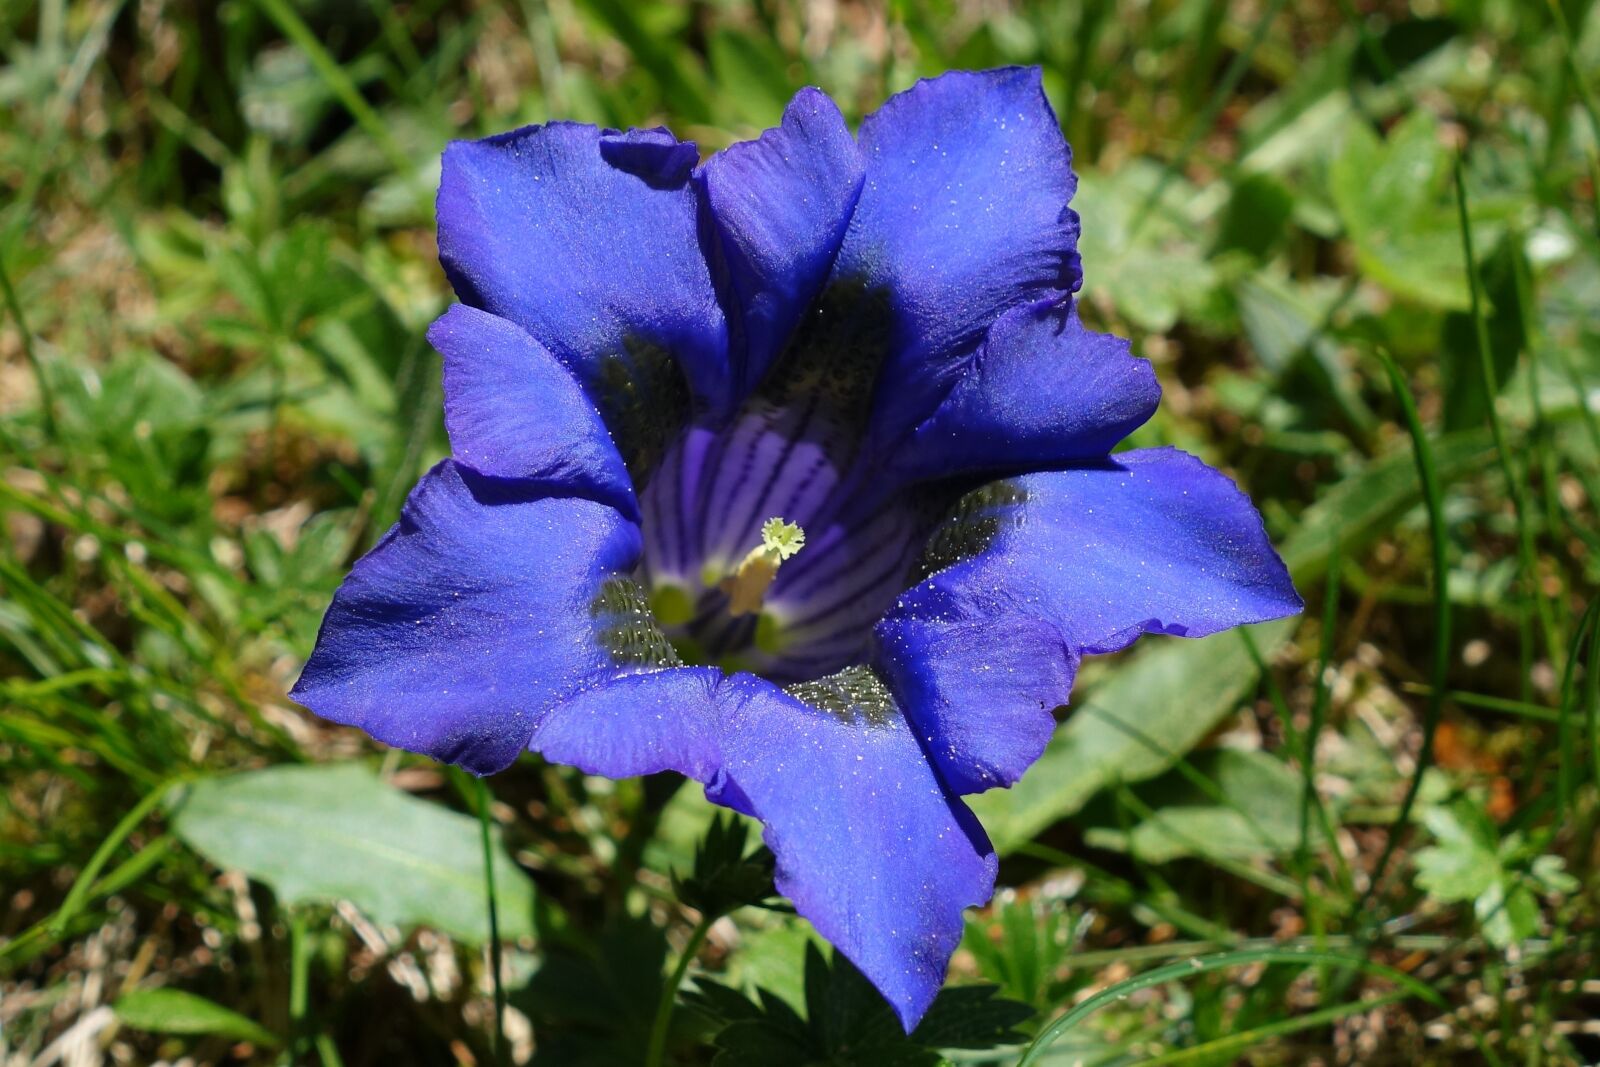 Sony Cyber-shot DSC-RX100 II sample photo. Gentian, blue, alpine flower photography